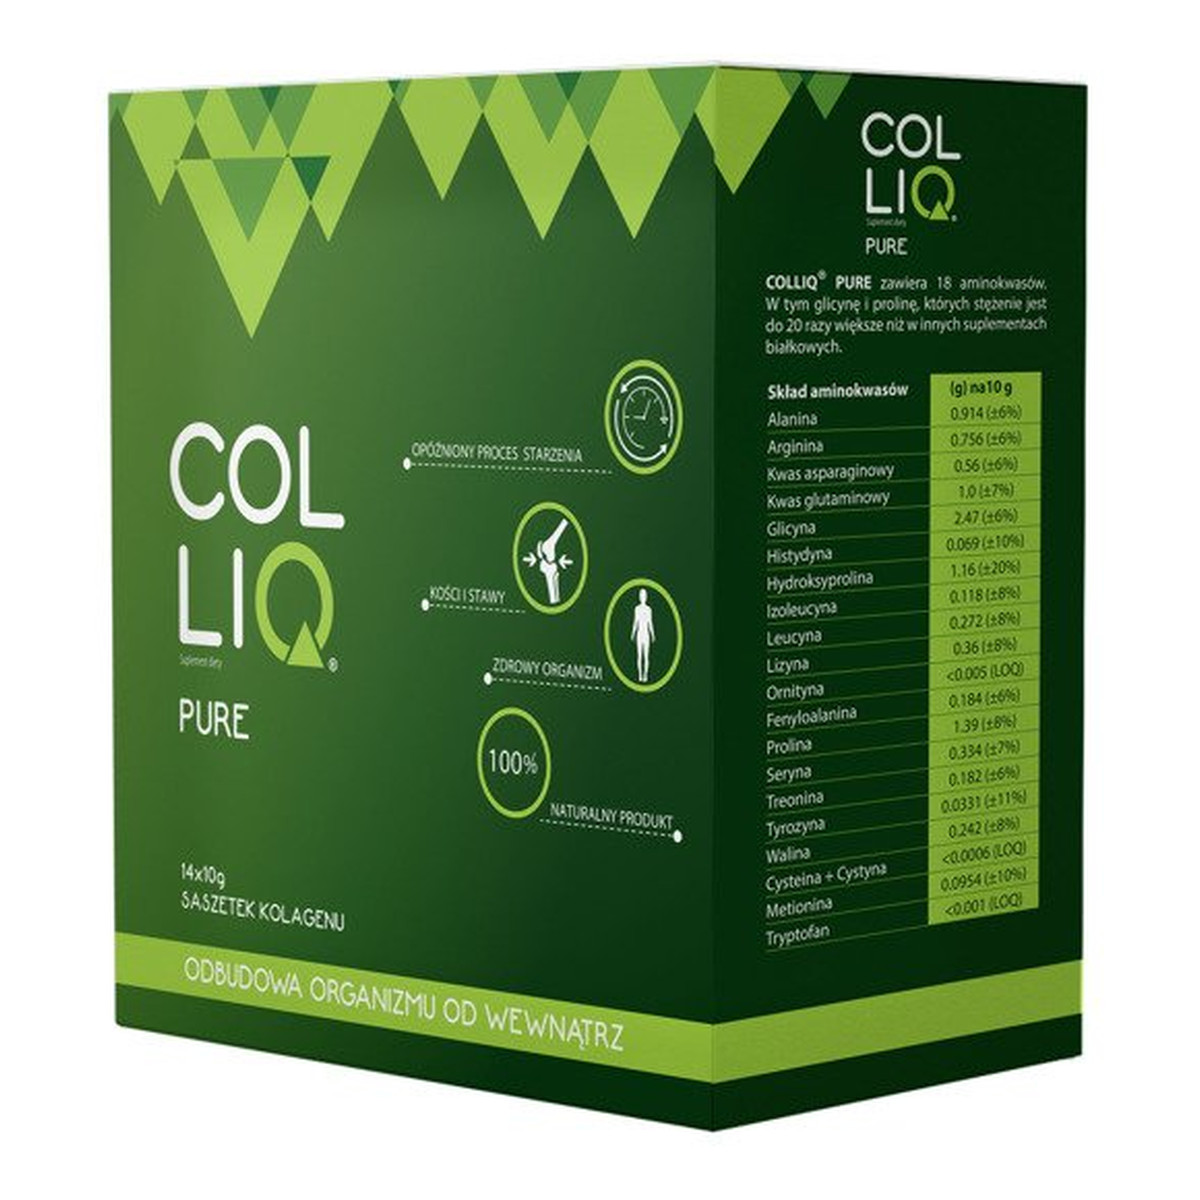 Colliq Pure suplement diety 14x10g saszetek kolagenu odbudowa organizmu od wewnątrz 140g